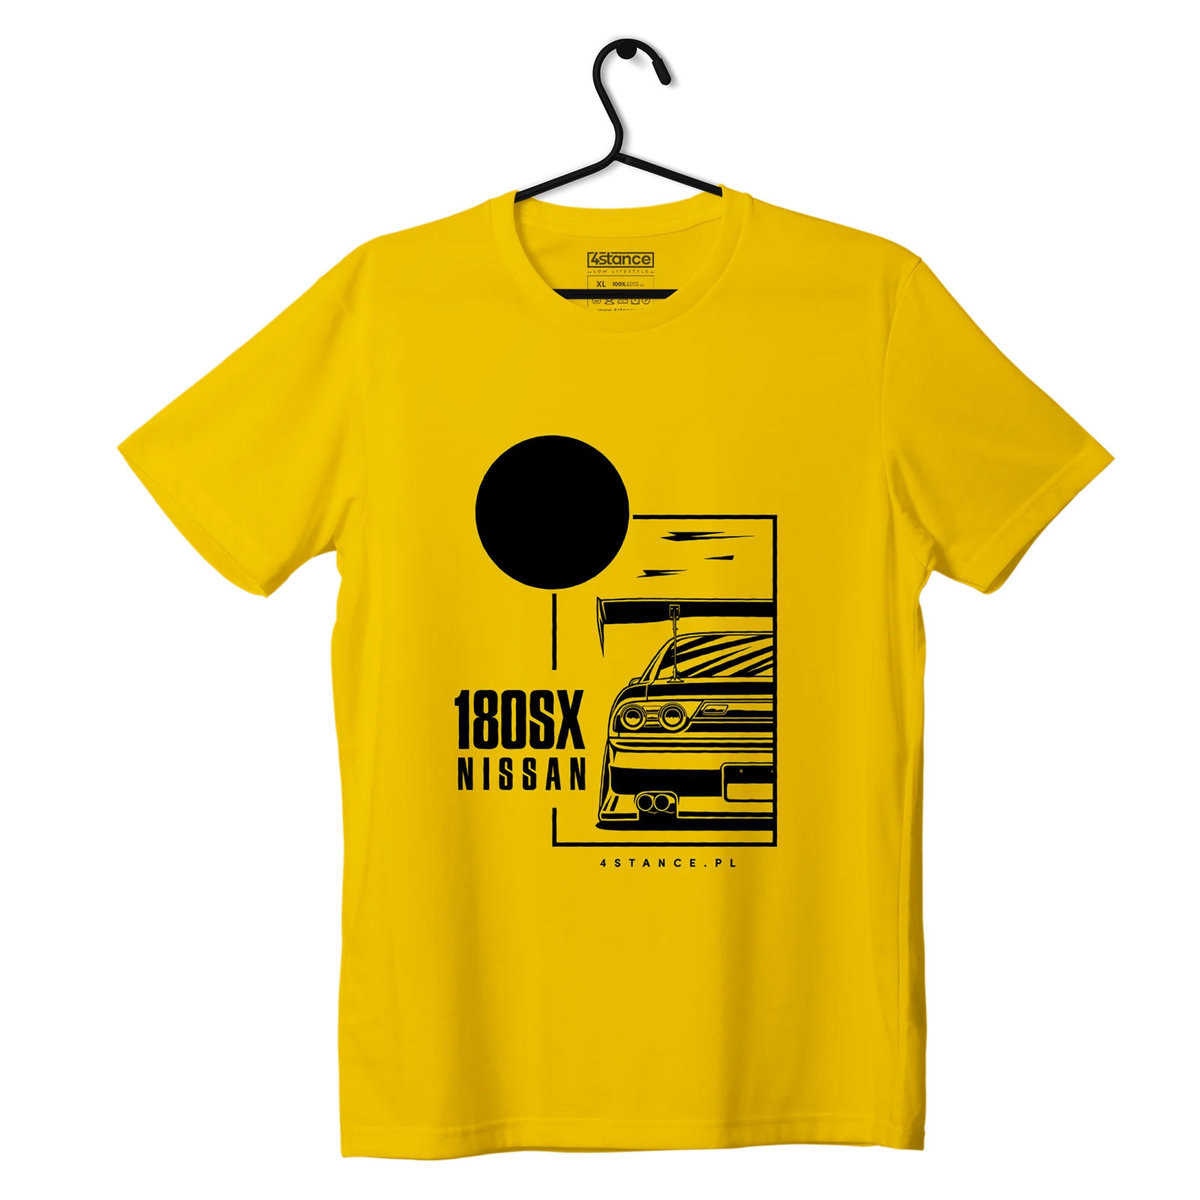 Zdjęcia - Odzież motocyklowa Nissan T-shirt koszulka  180SX-XL 